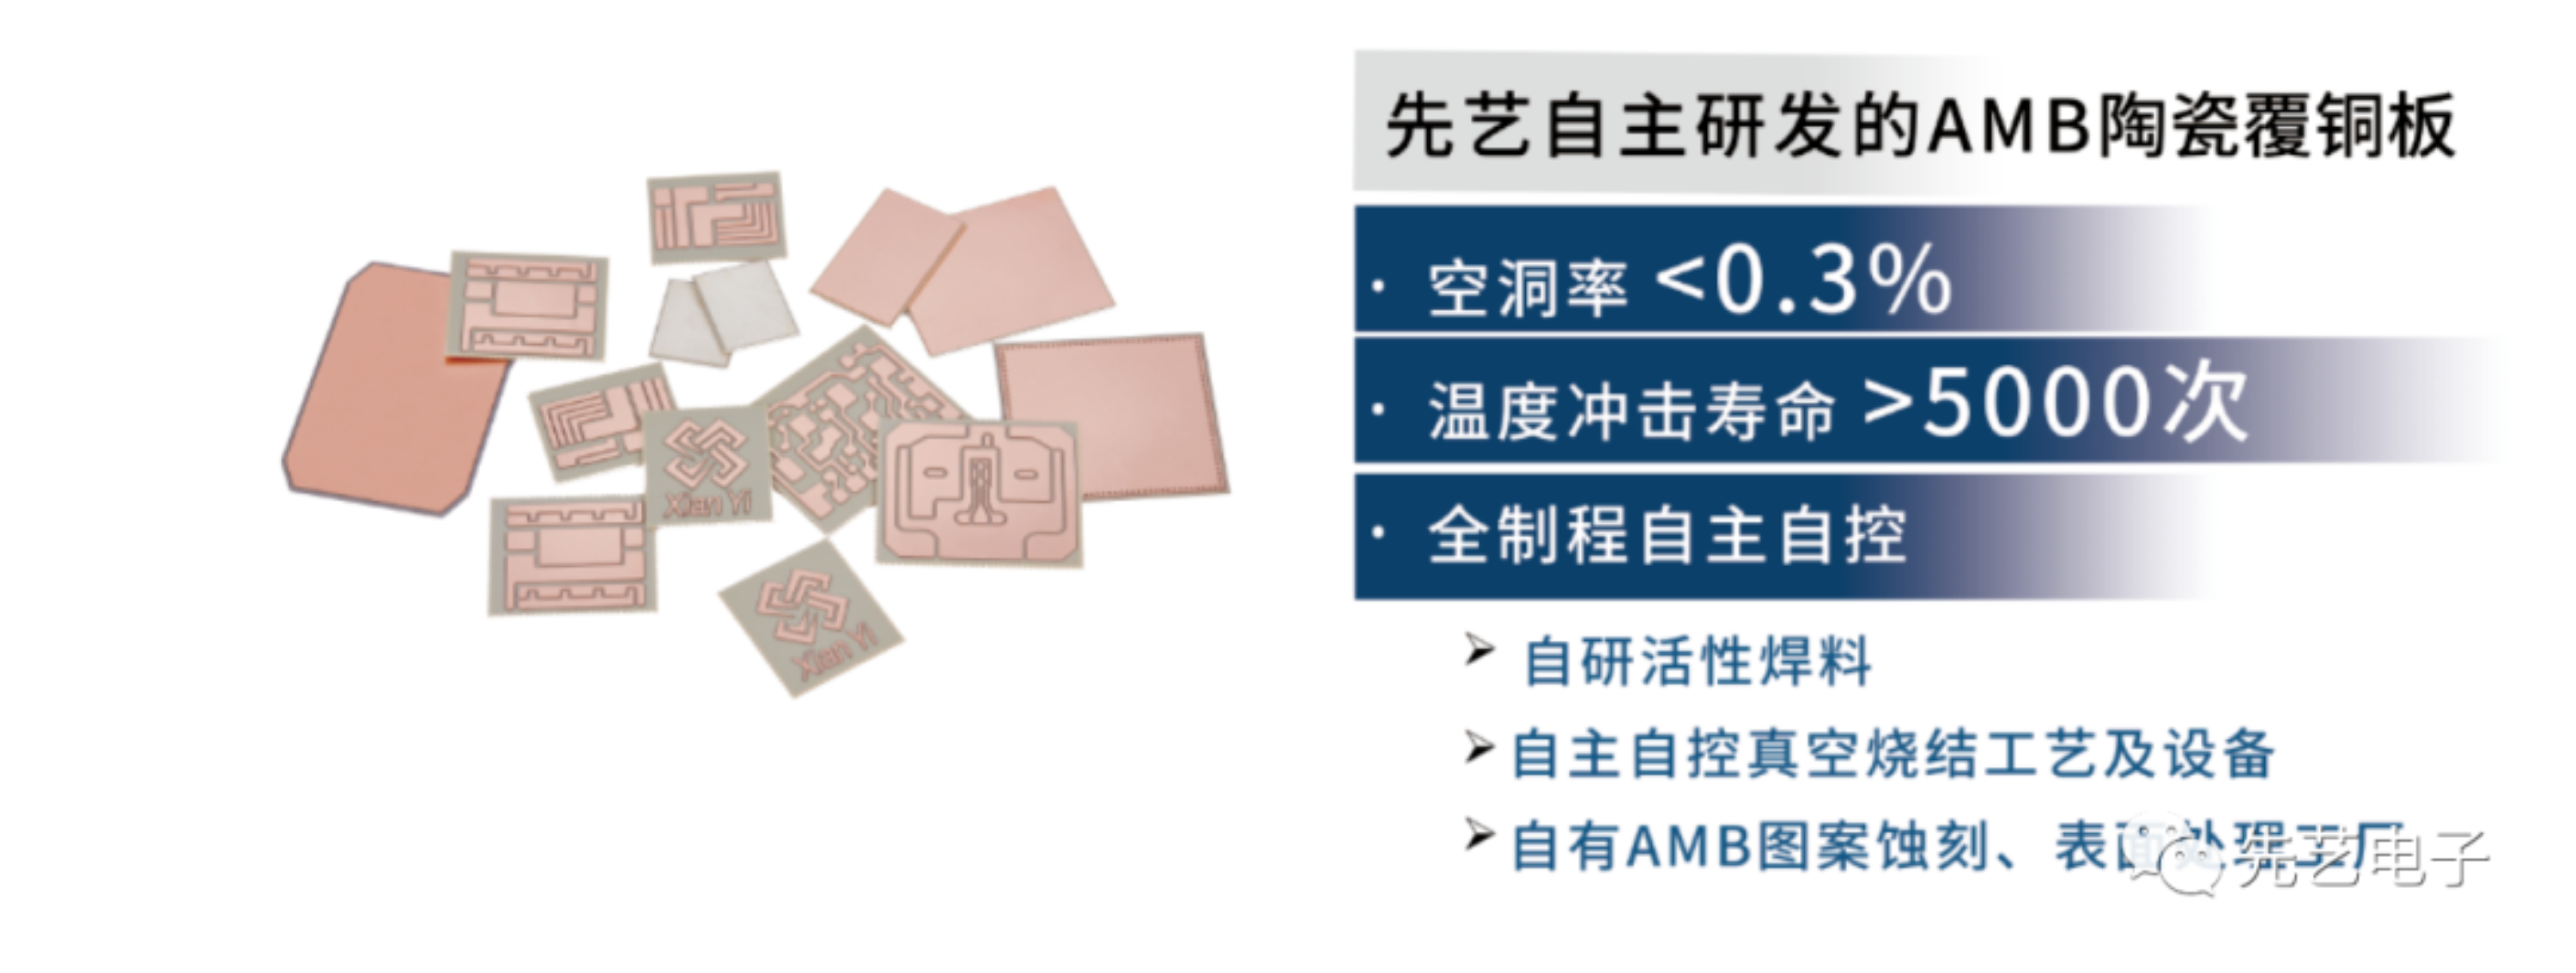 深圳国际半导体技术暨应用展览会丨先艺AMB陶瓷覆铜板等多款明星产品备受青睐！